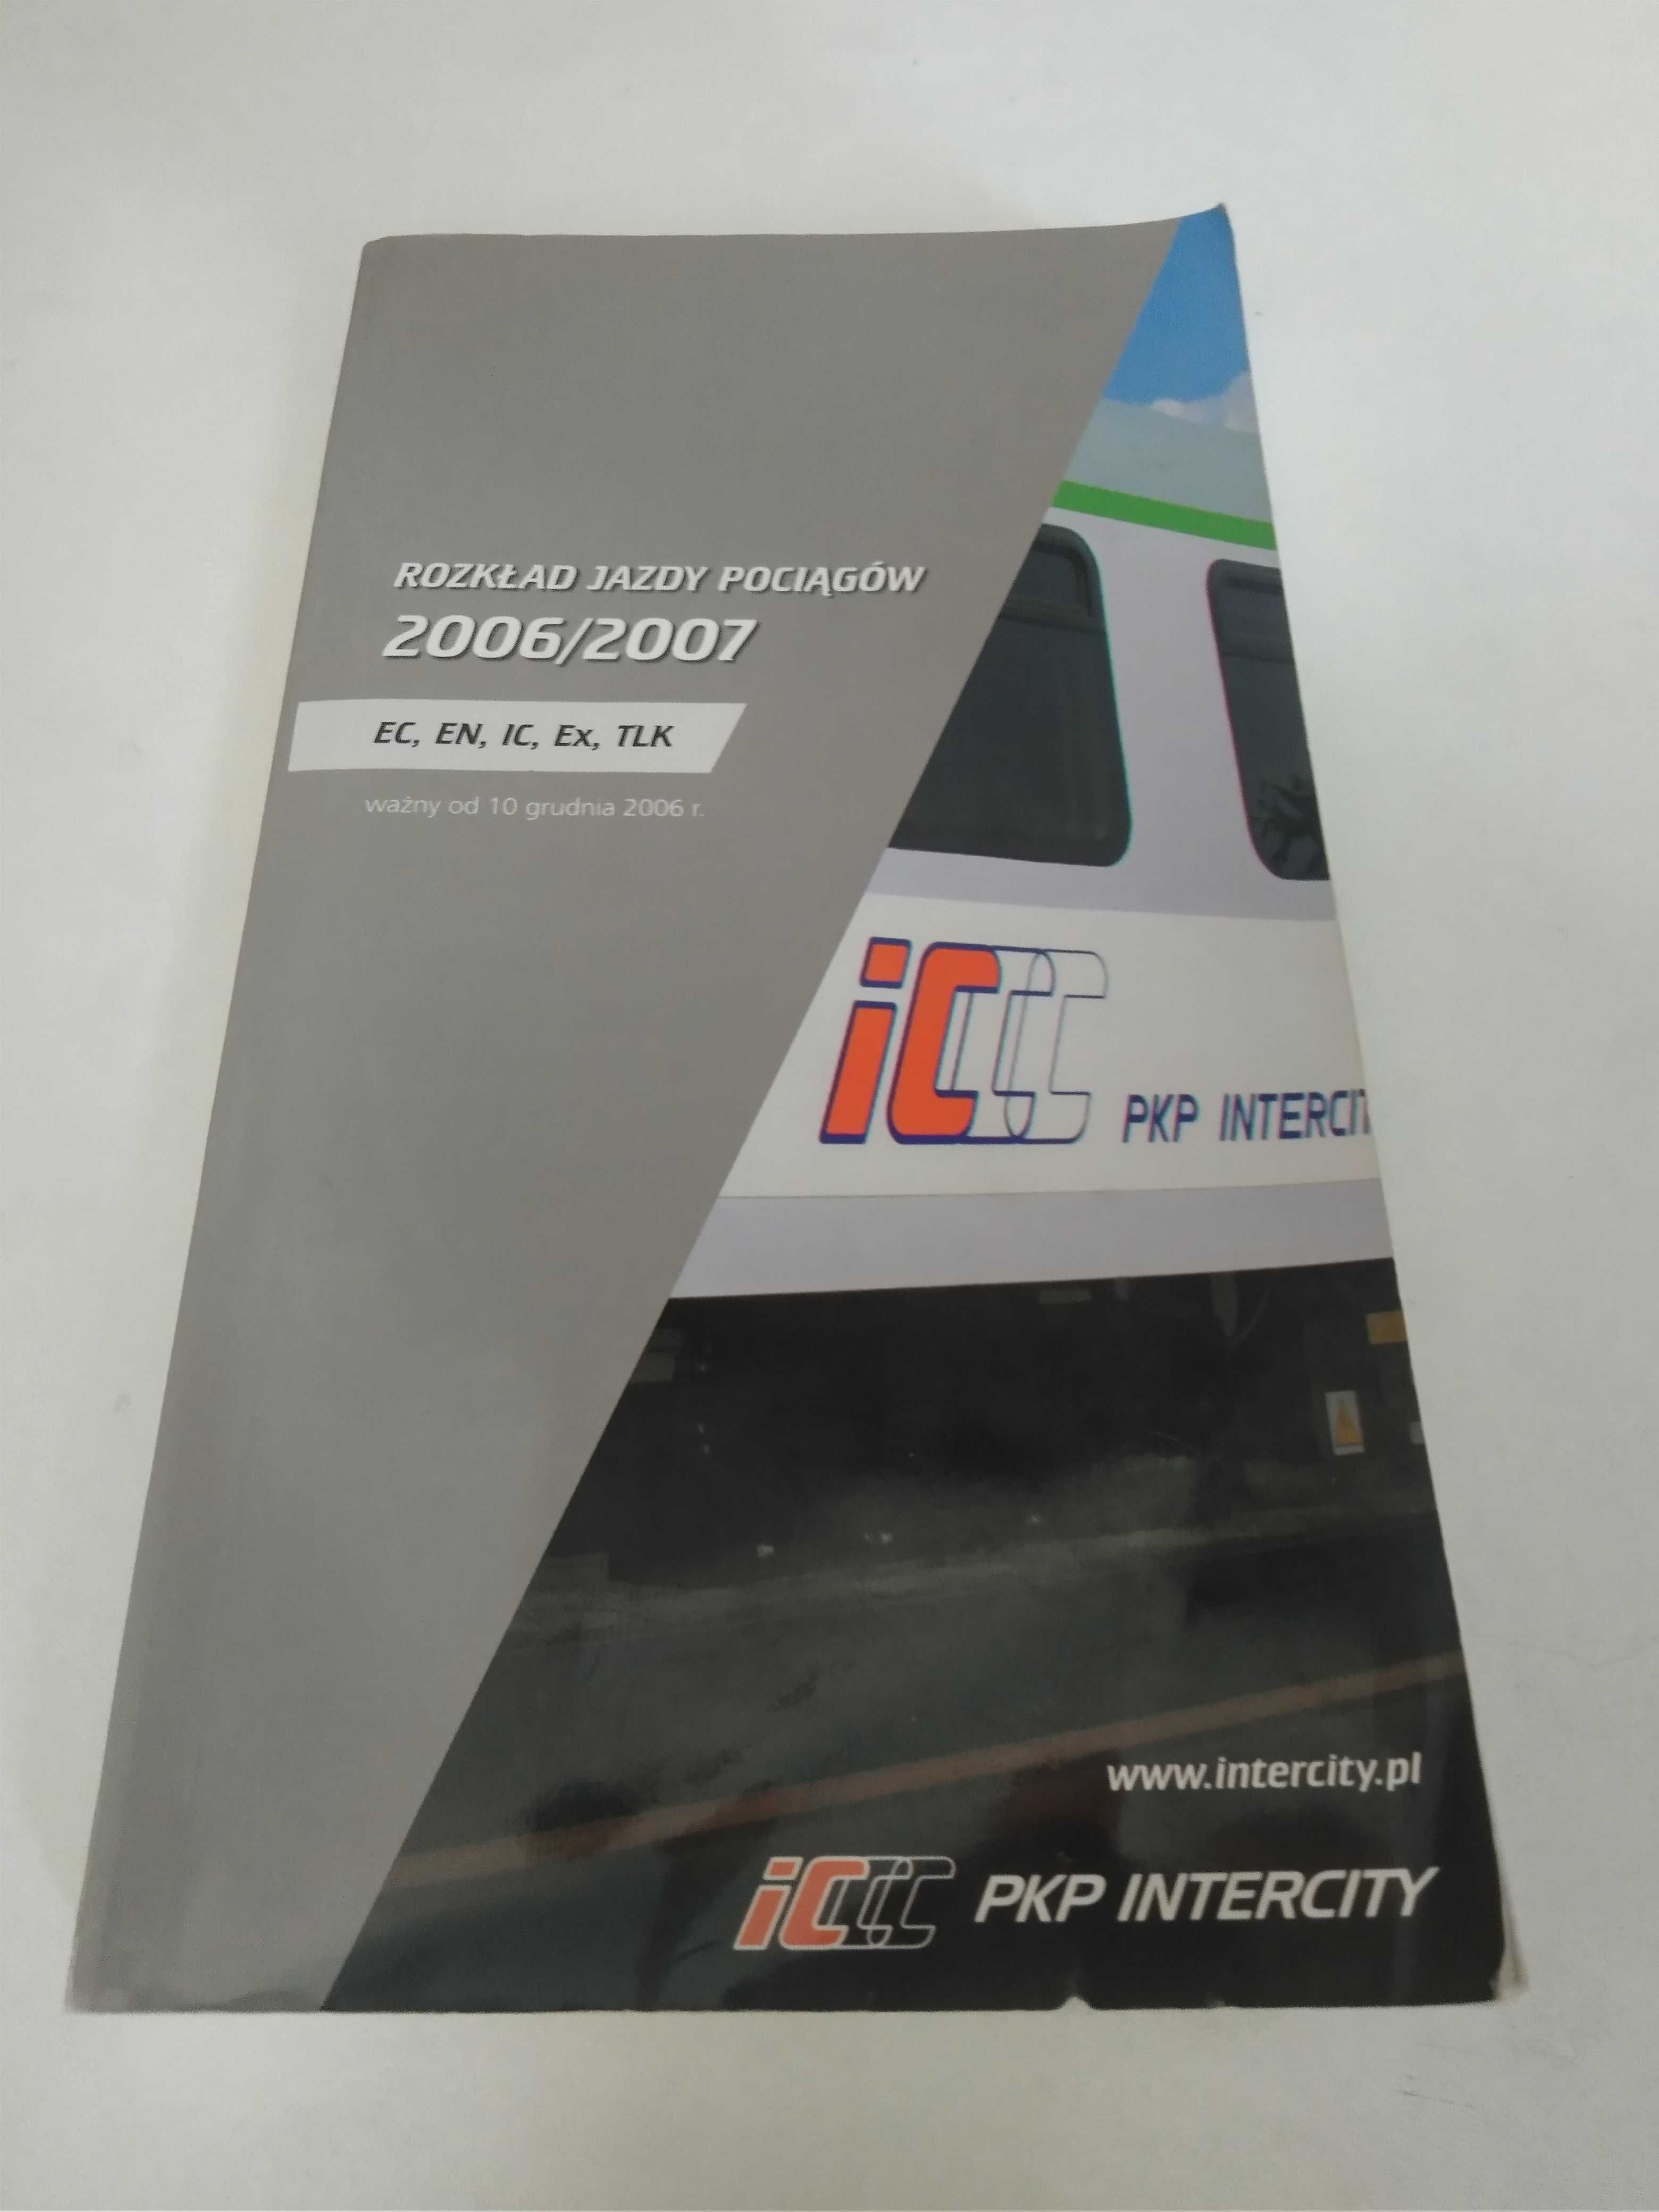 Rozkład jazdy pociągów Intercity 2006/2007